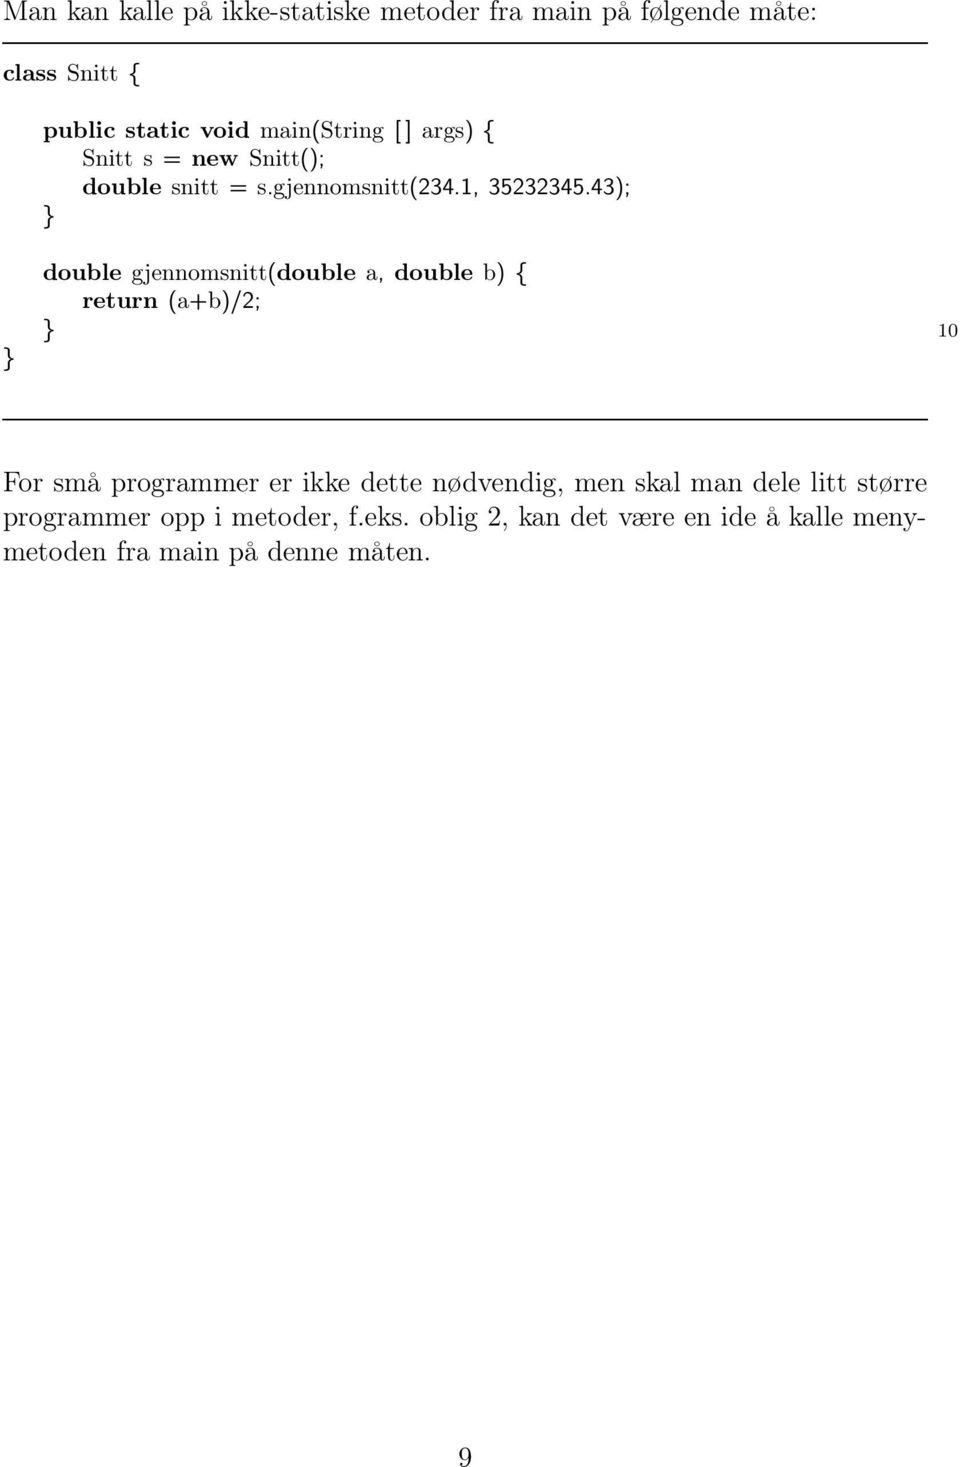 43); double gjennomsnitt(double a, double b) { return (a+b)/2; 10 For små programmer er ikke dette nødvendig,